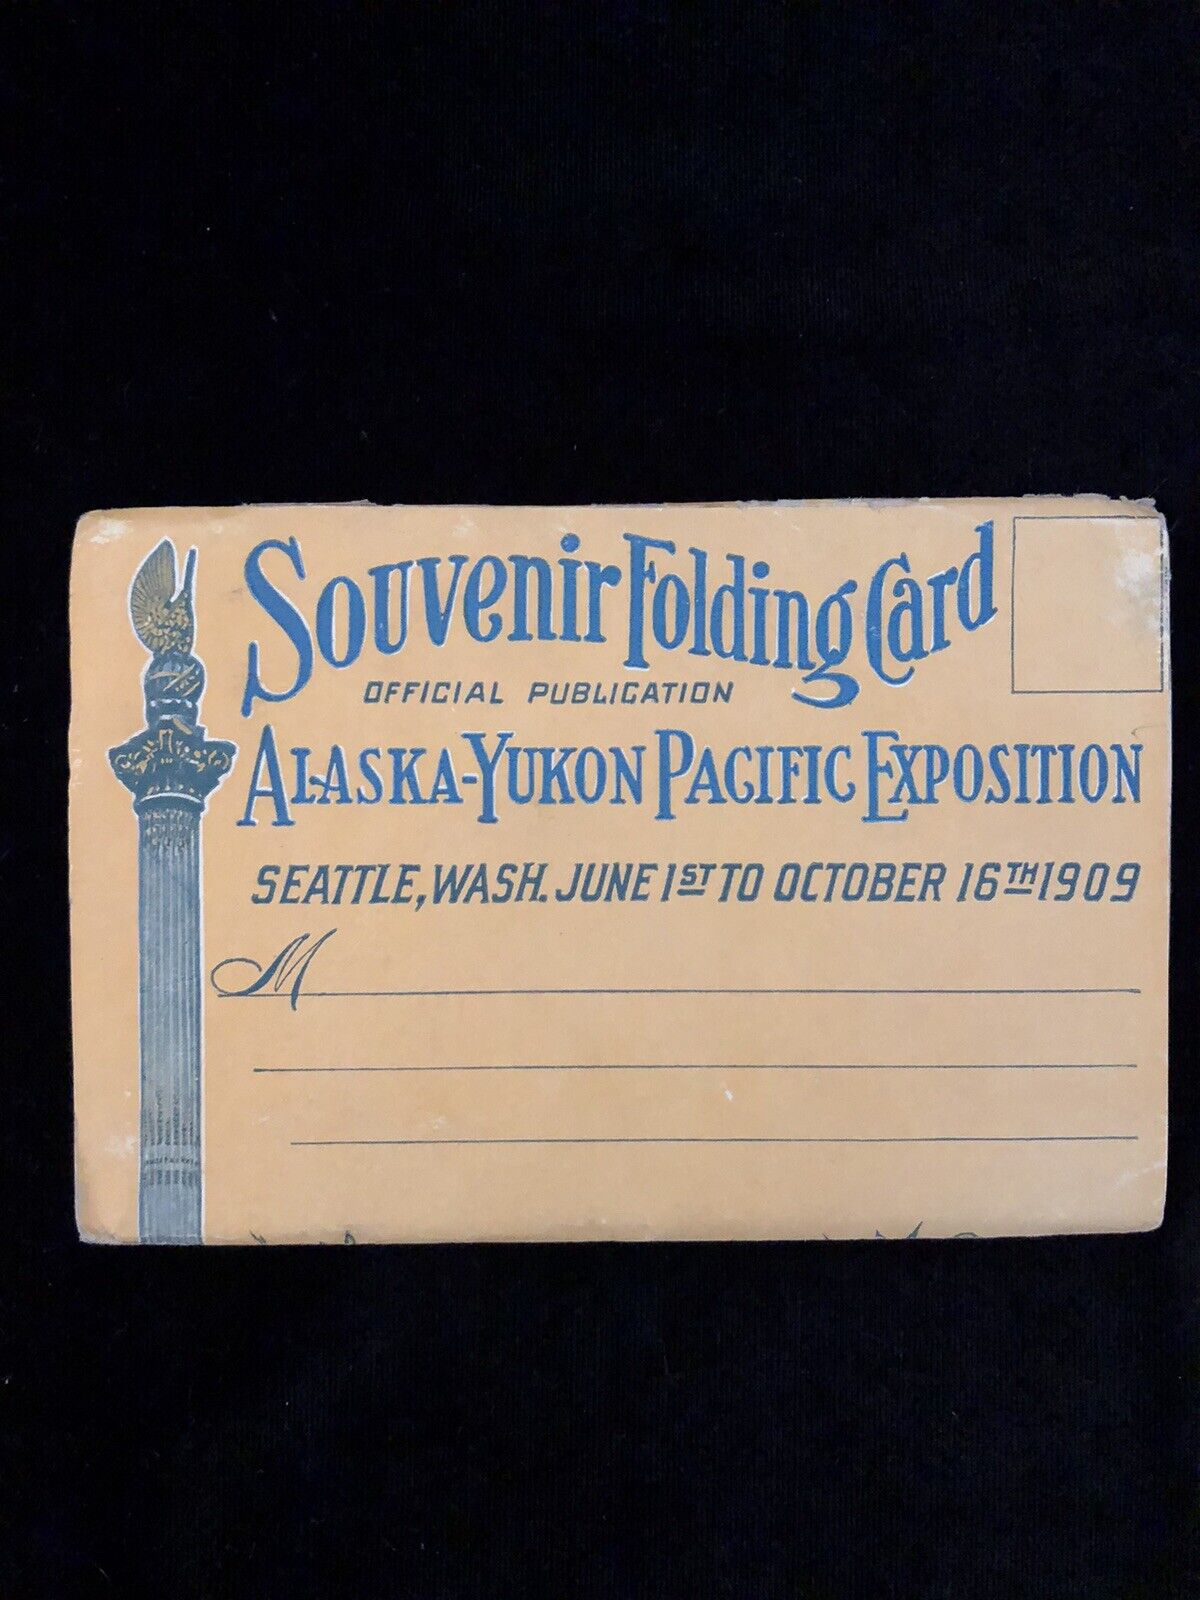 Alaska-Yukon Pacific Exposition: Souvenir Folding Card (1909)